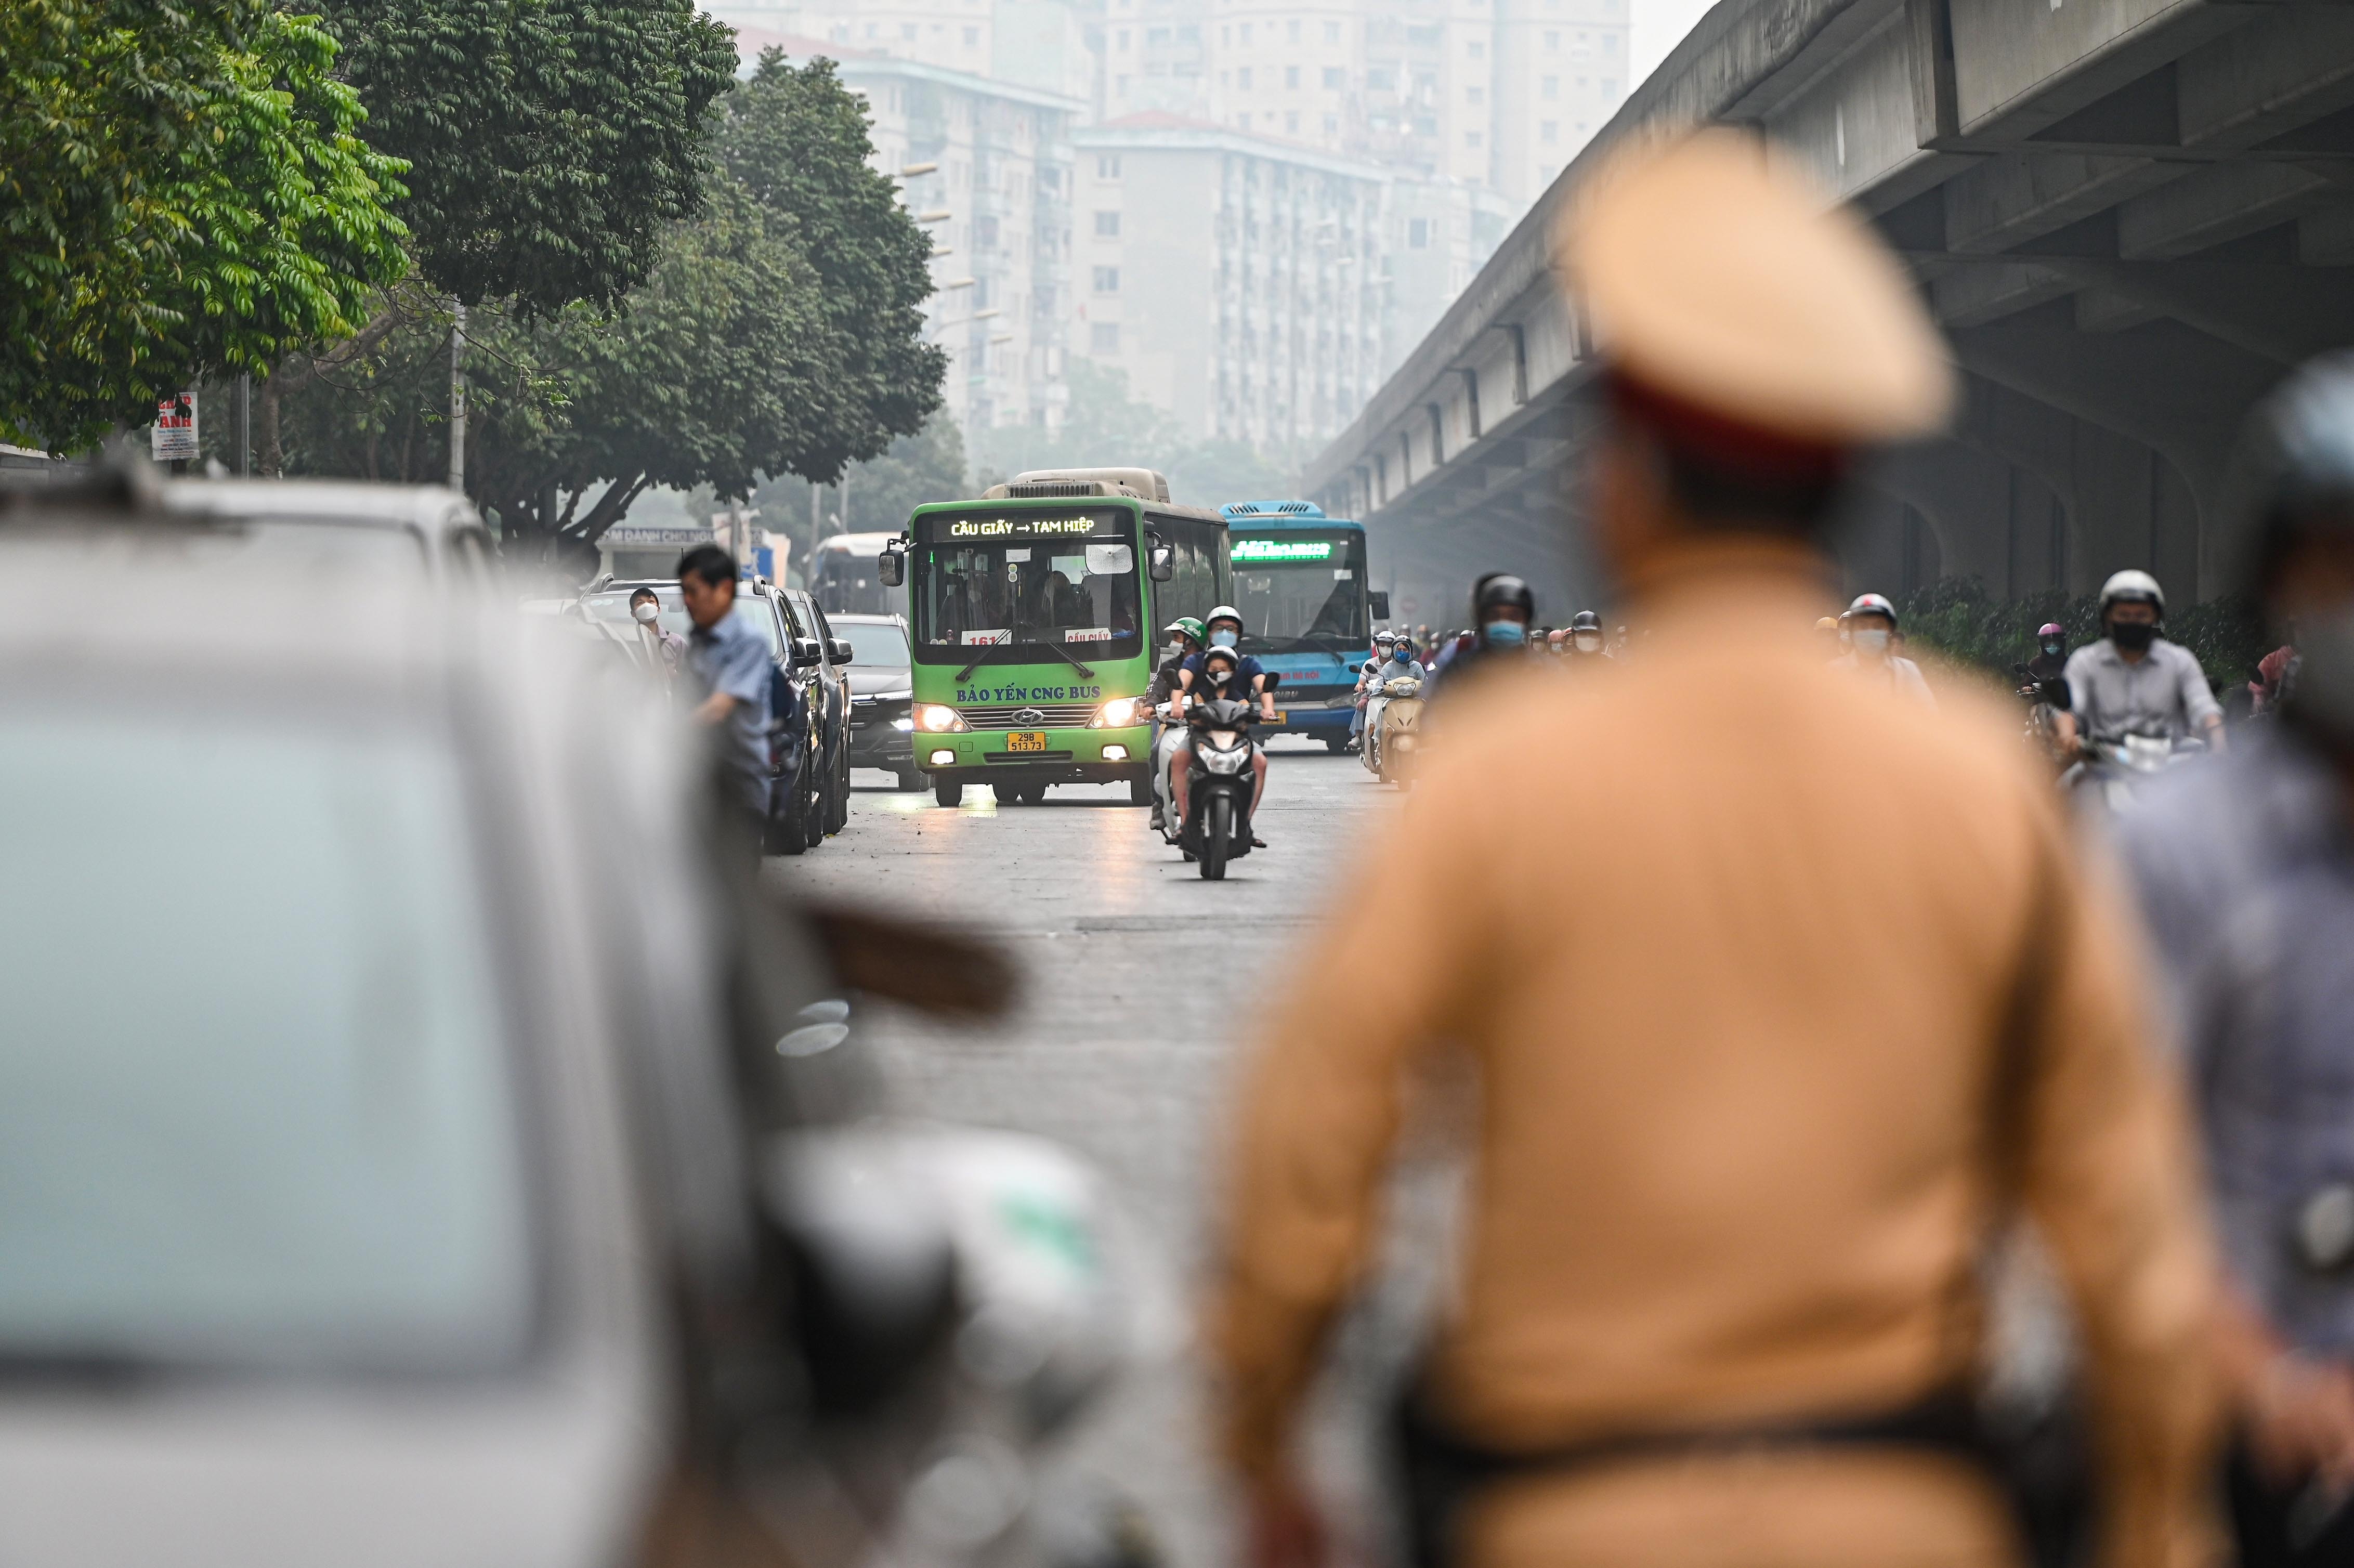 Đỗ xe ở lòng đường Hà Nội, tài xế xếp hàng dài chờ bị xử phạt - ảnh 6